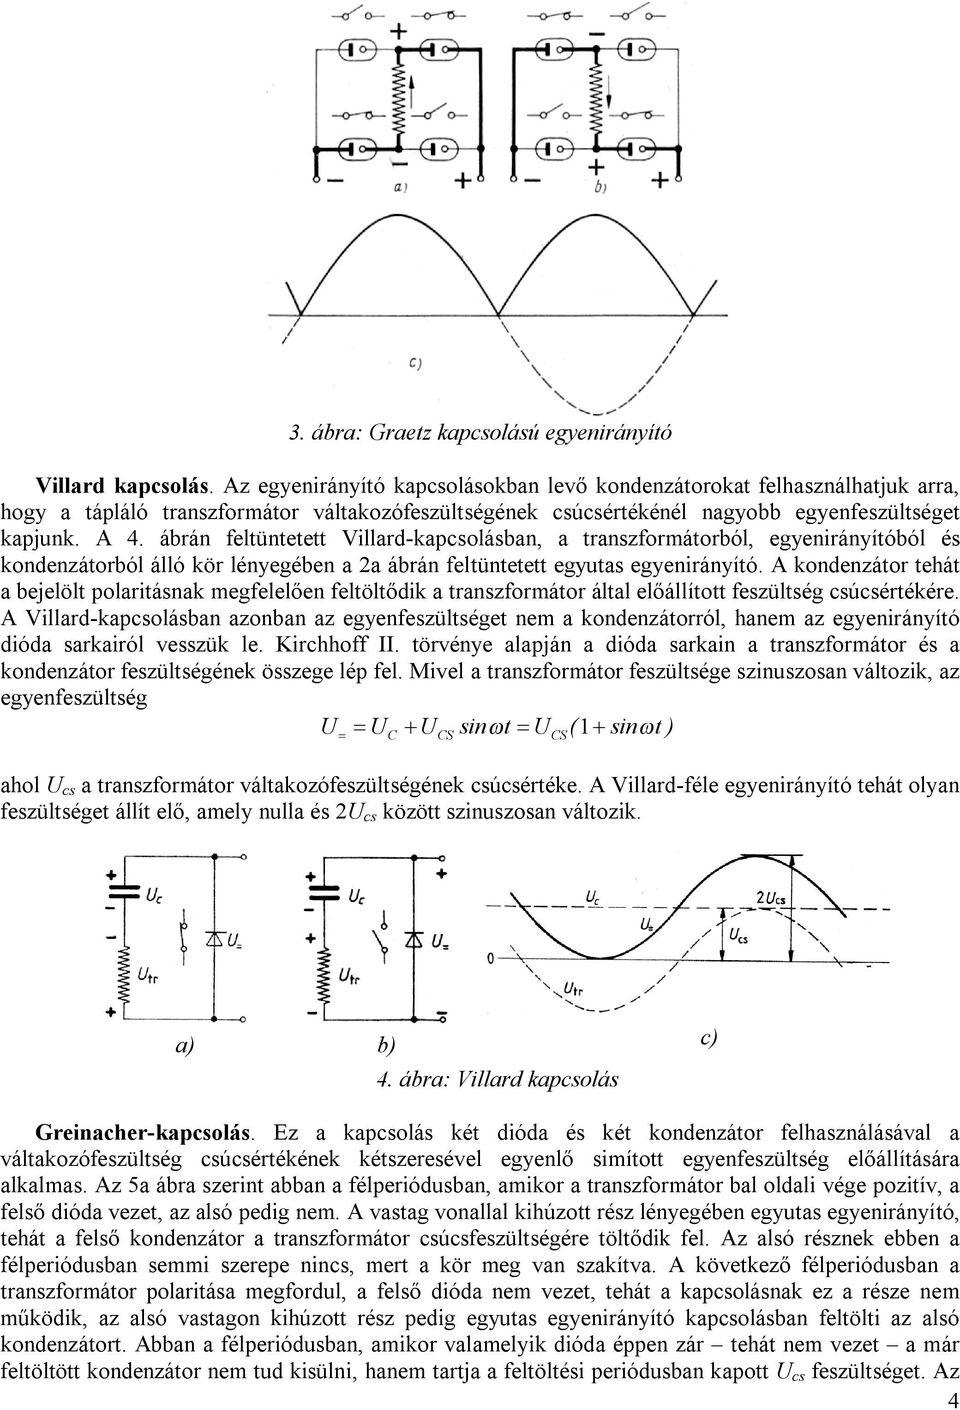 ábrán feltüntetett Villard-kapcsolásban, a transzformátorból, egyenirányítóból és kondenzátorból álló kör lényegében a 2a ábrán feltüntetett egyutas egyenirányító.